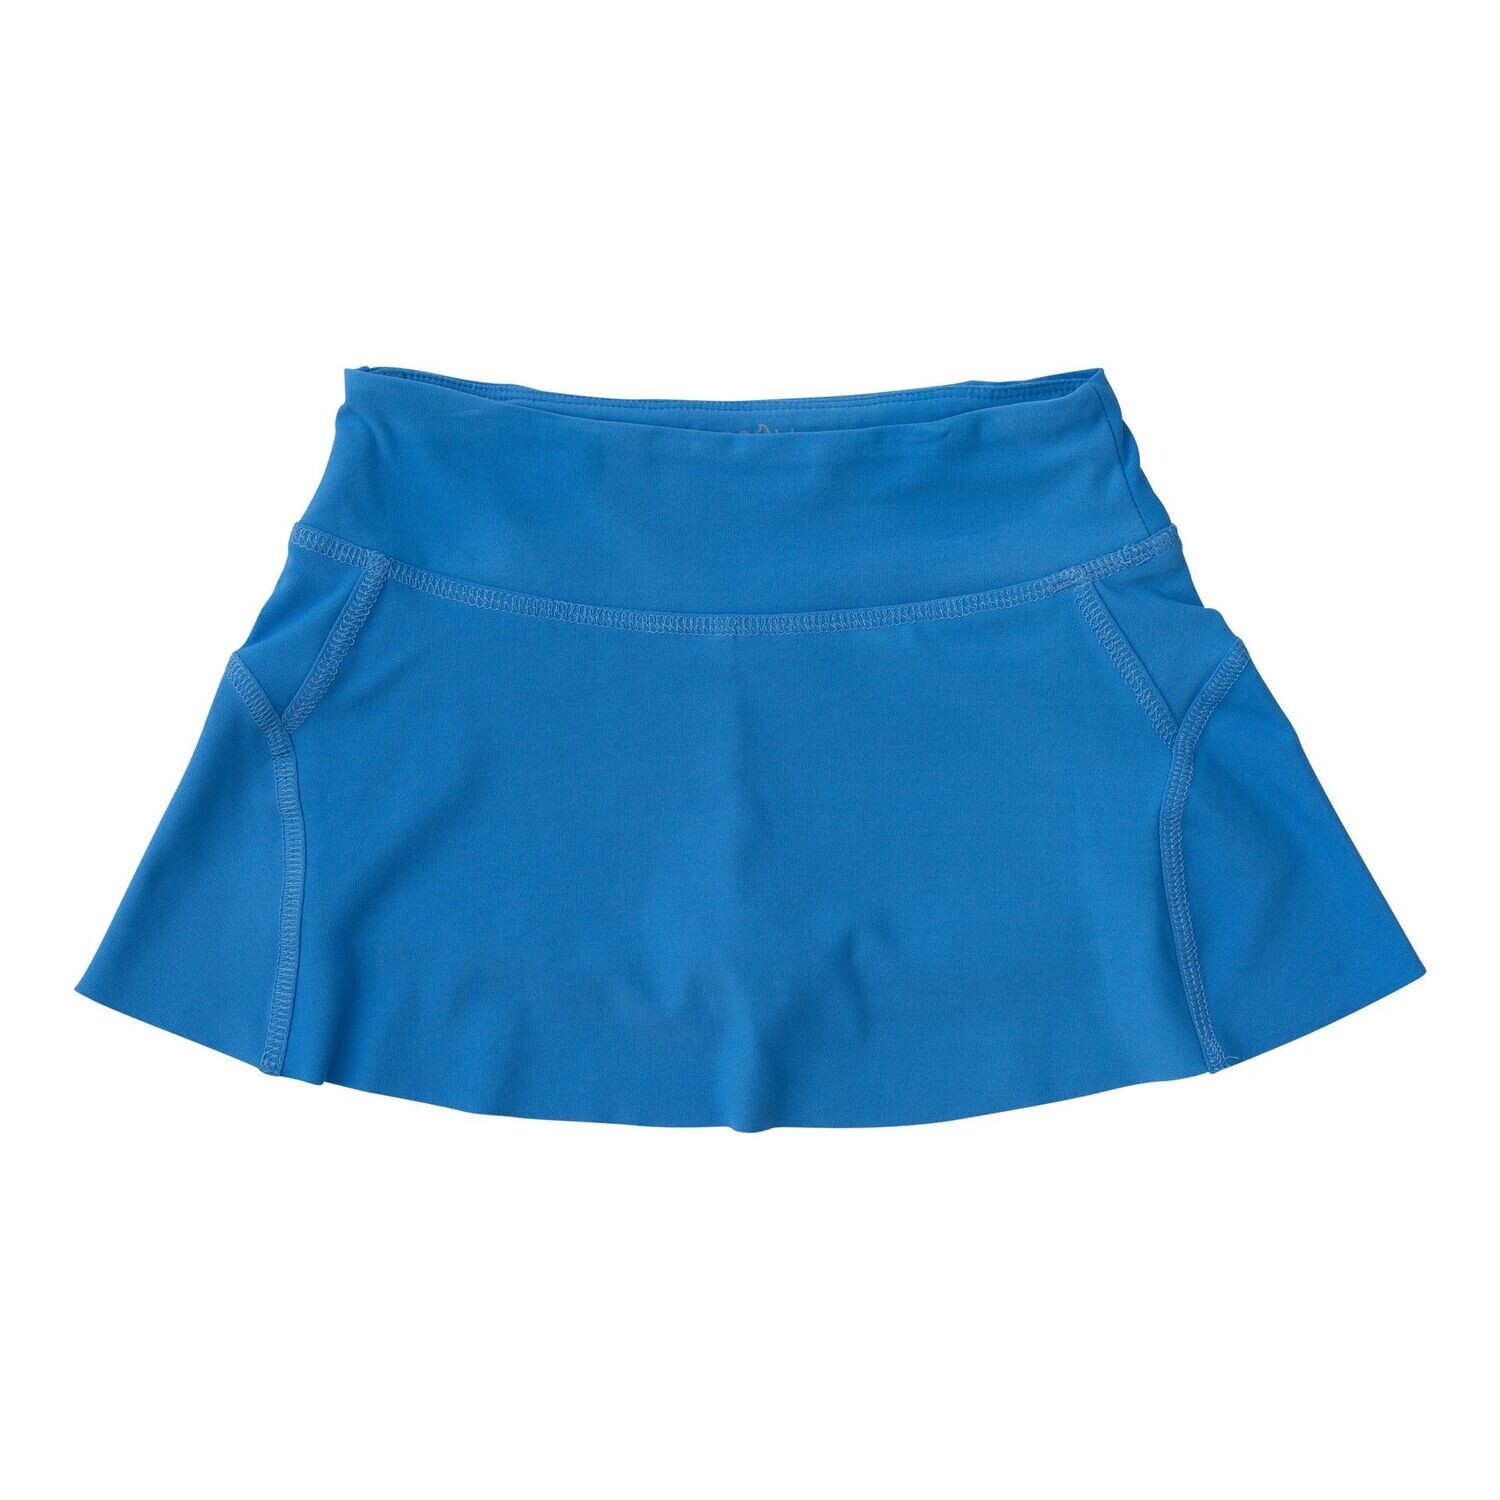 Tennis Twirl Skort-Regatta Blue, Size: 2T